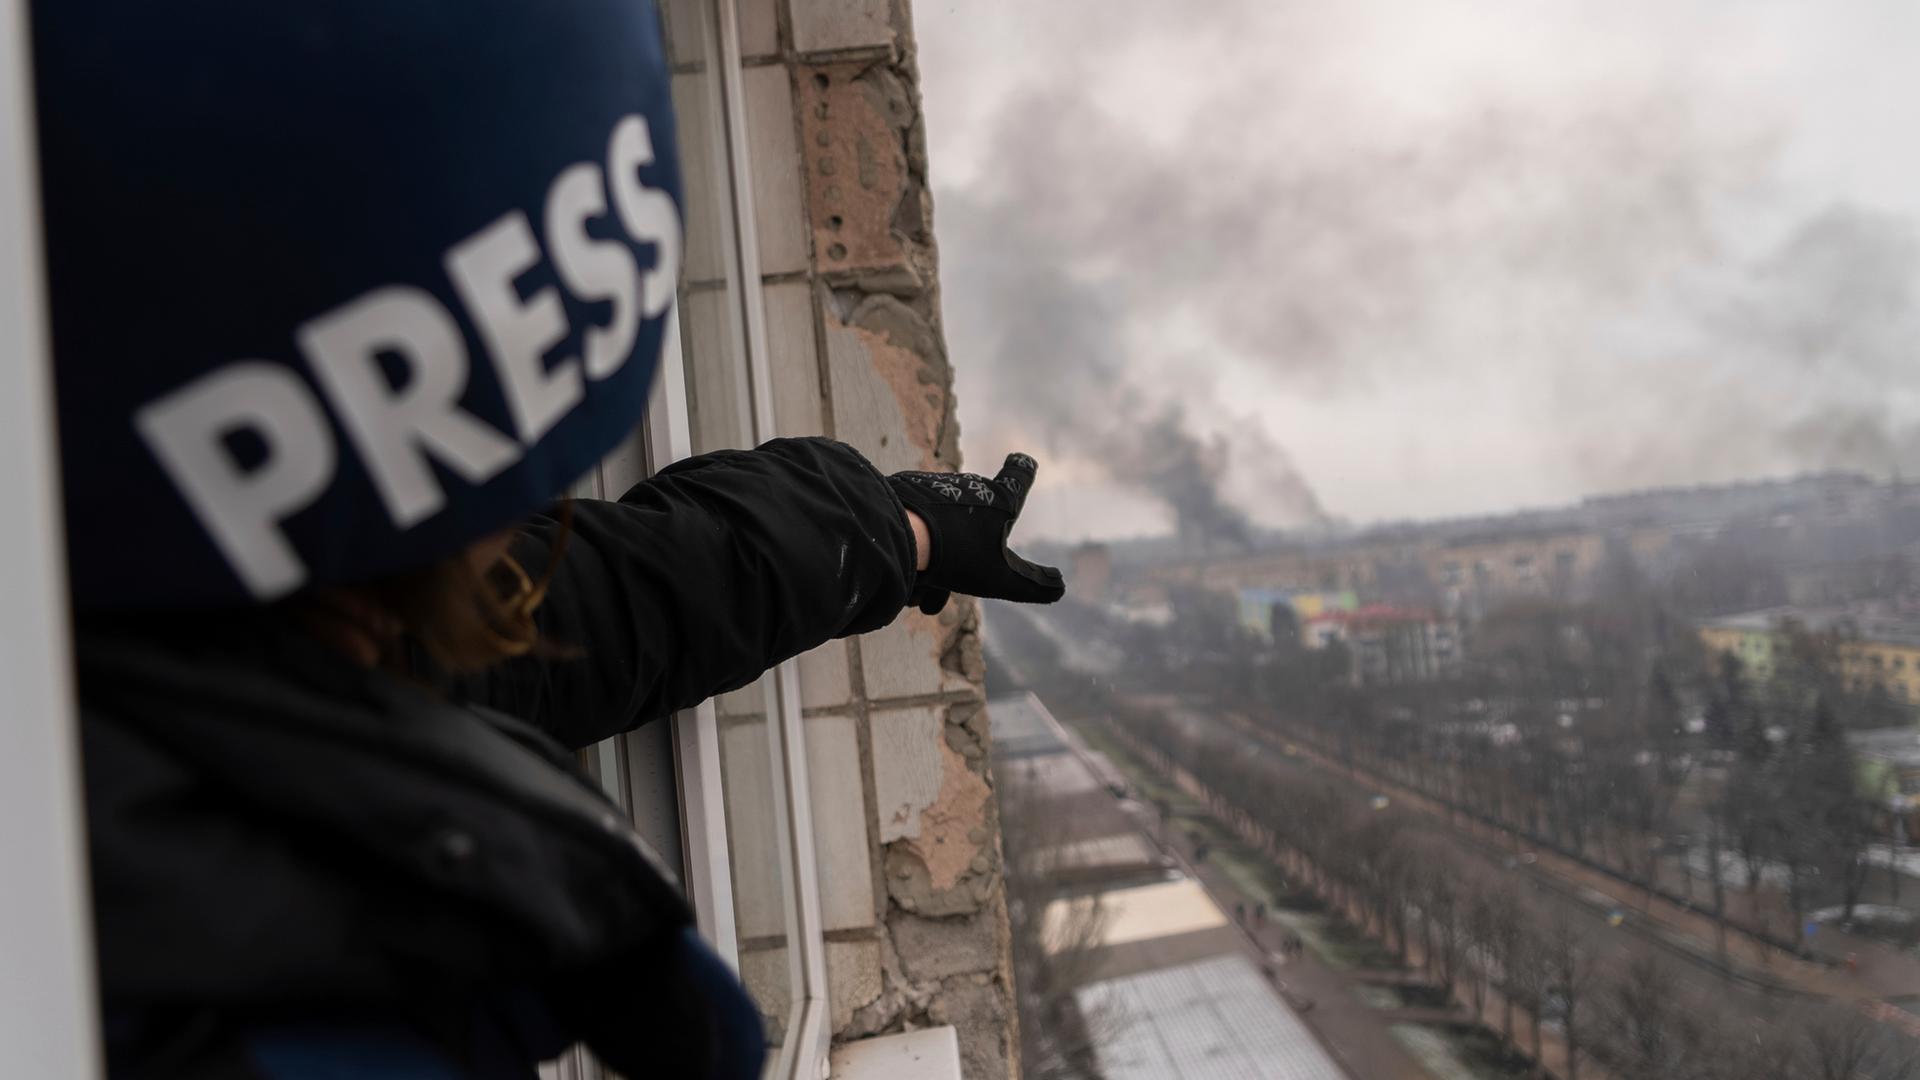 Ein Journalist mit einem Helm und der Aufschrift "Press" steht in einem zerstörten Haus und zeigt auf eine Rauchwolke in der Ferne.